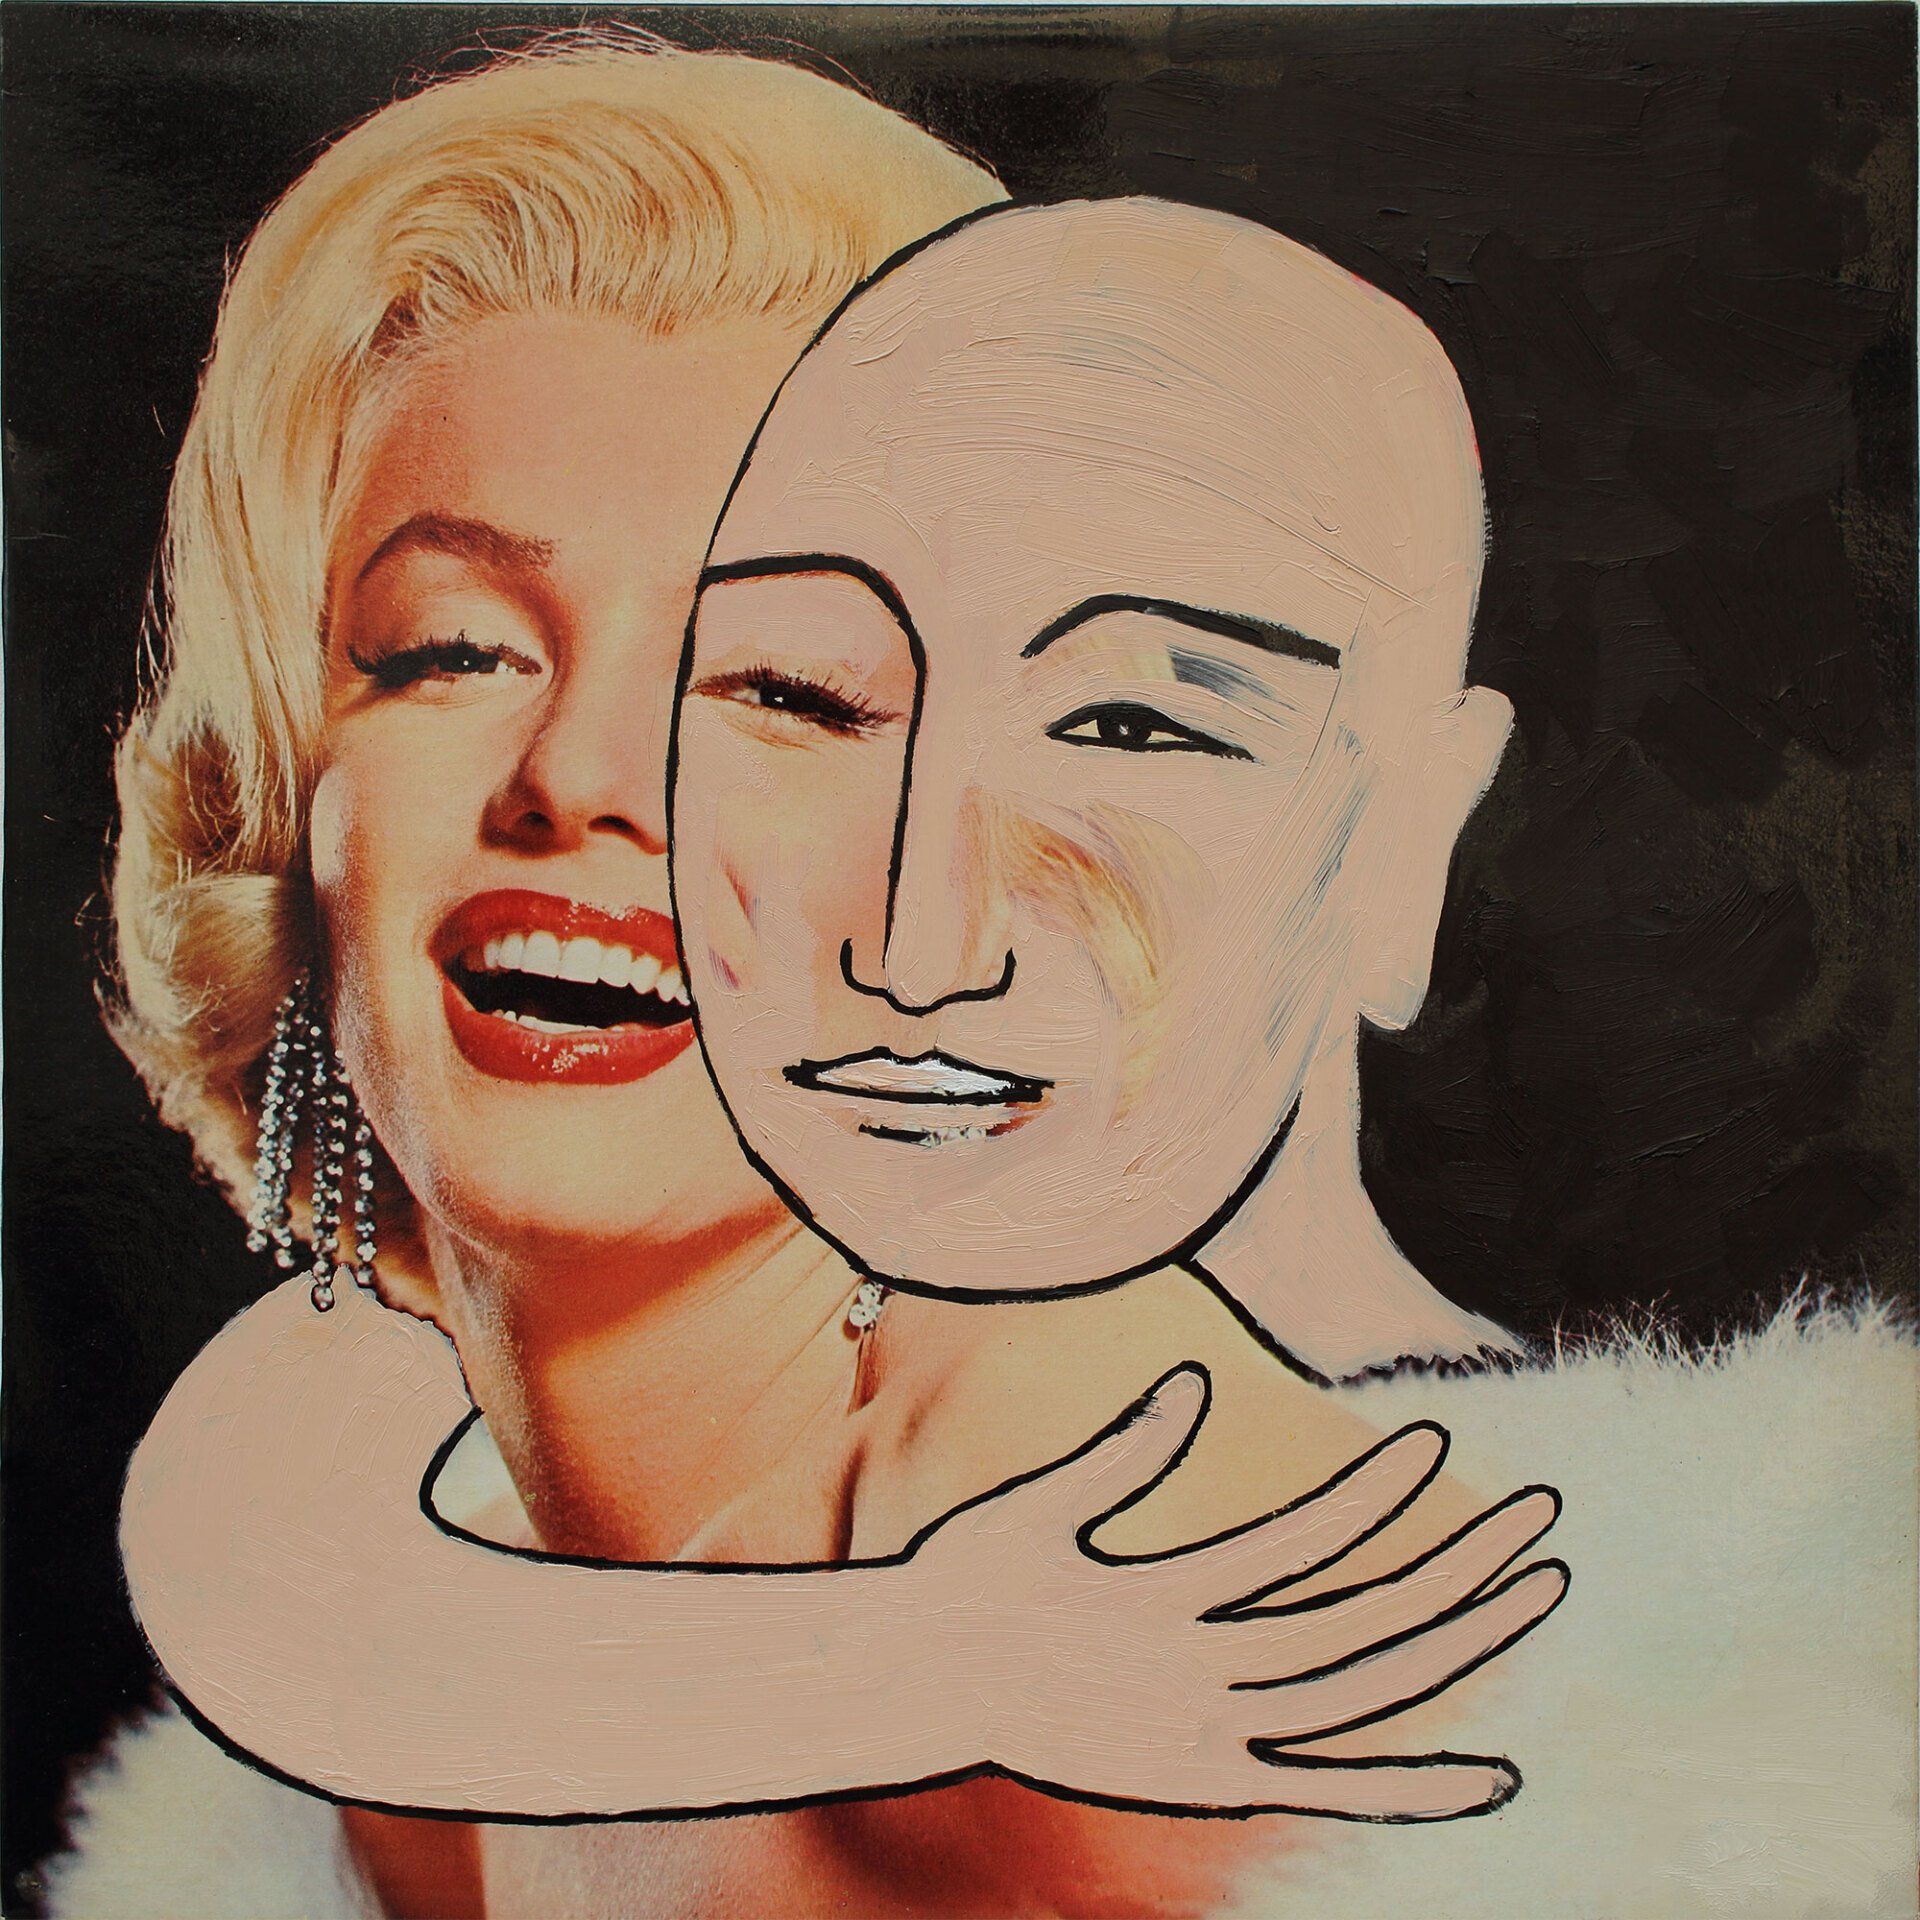 „Ghost Rider No. 21“ (Marilyn Monroe) by Sebastian Bieniek (B1EN1EK), 2019. Oil on original LP cover, 31,5 cm. x 30 cm. Bieniek-Paint (overpainted medium) from the oeuvre of Bieniekface by the artist.